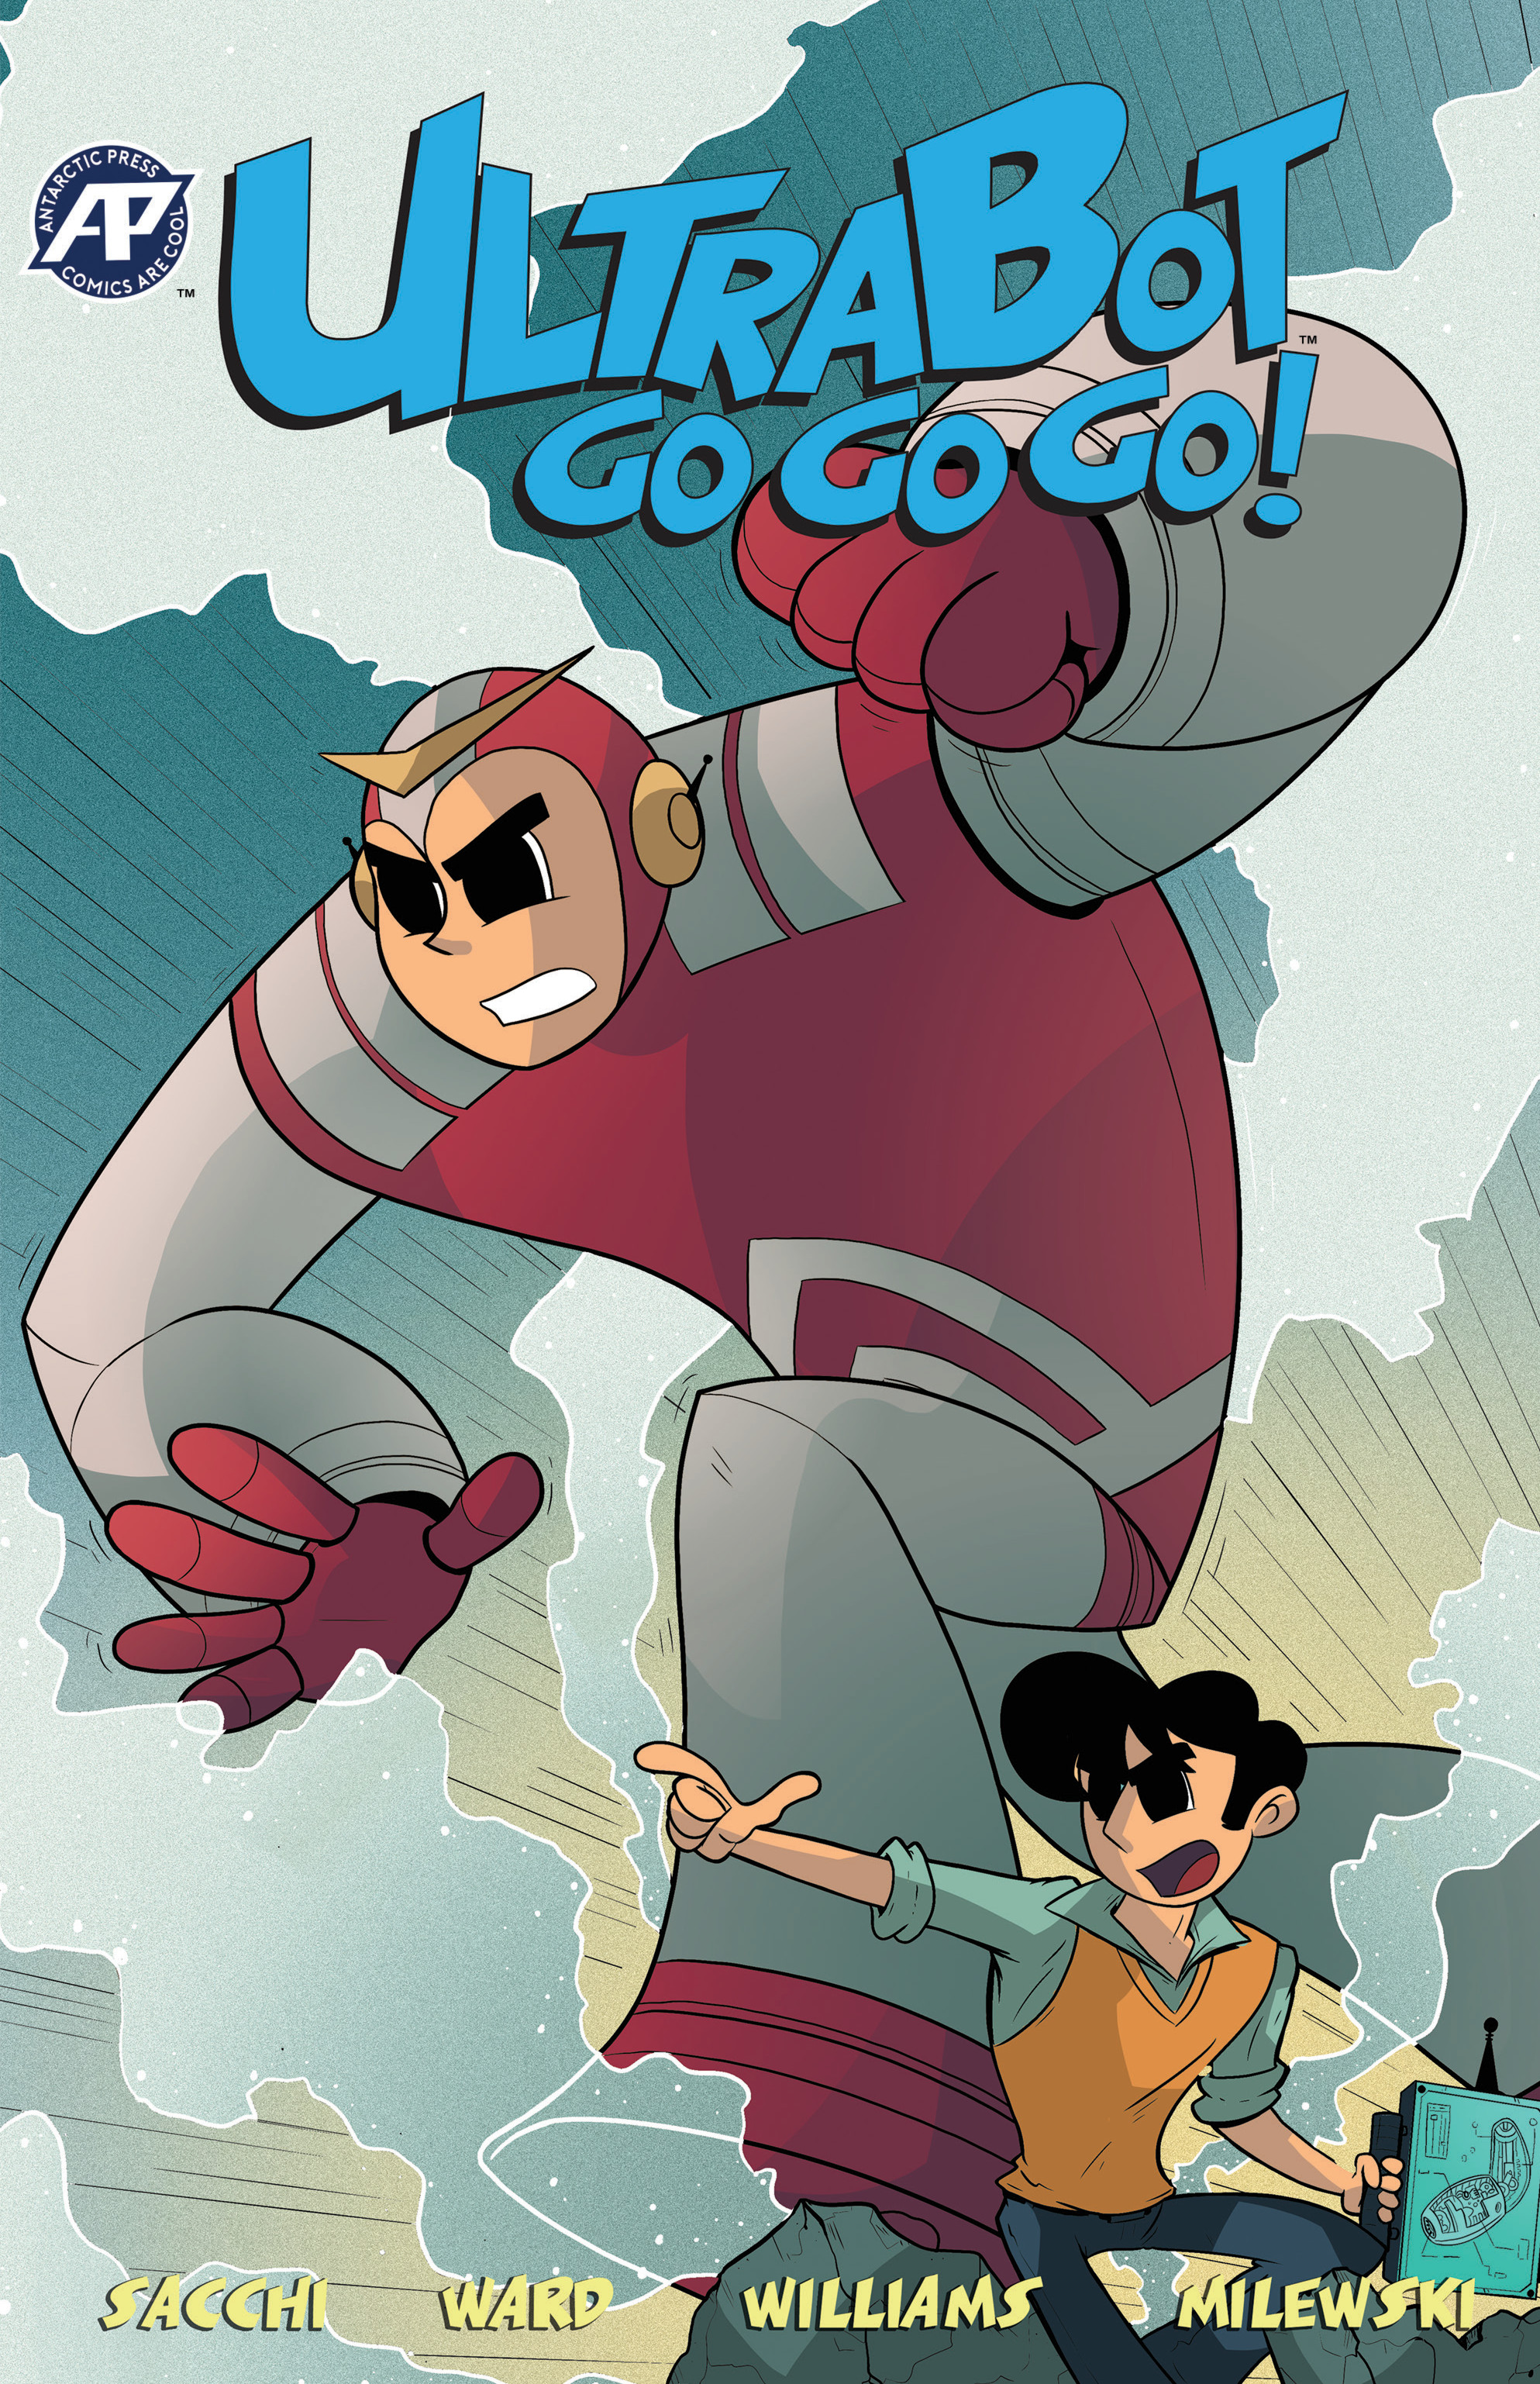 Read online Ultrabot Go Go Go! comic -  Issue # Full - 1